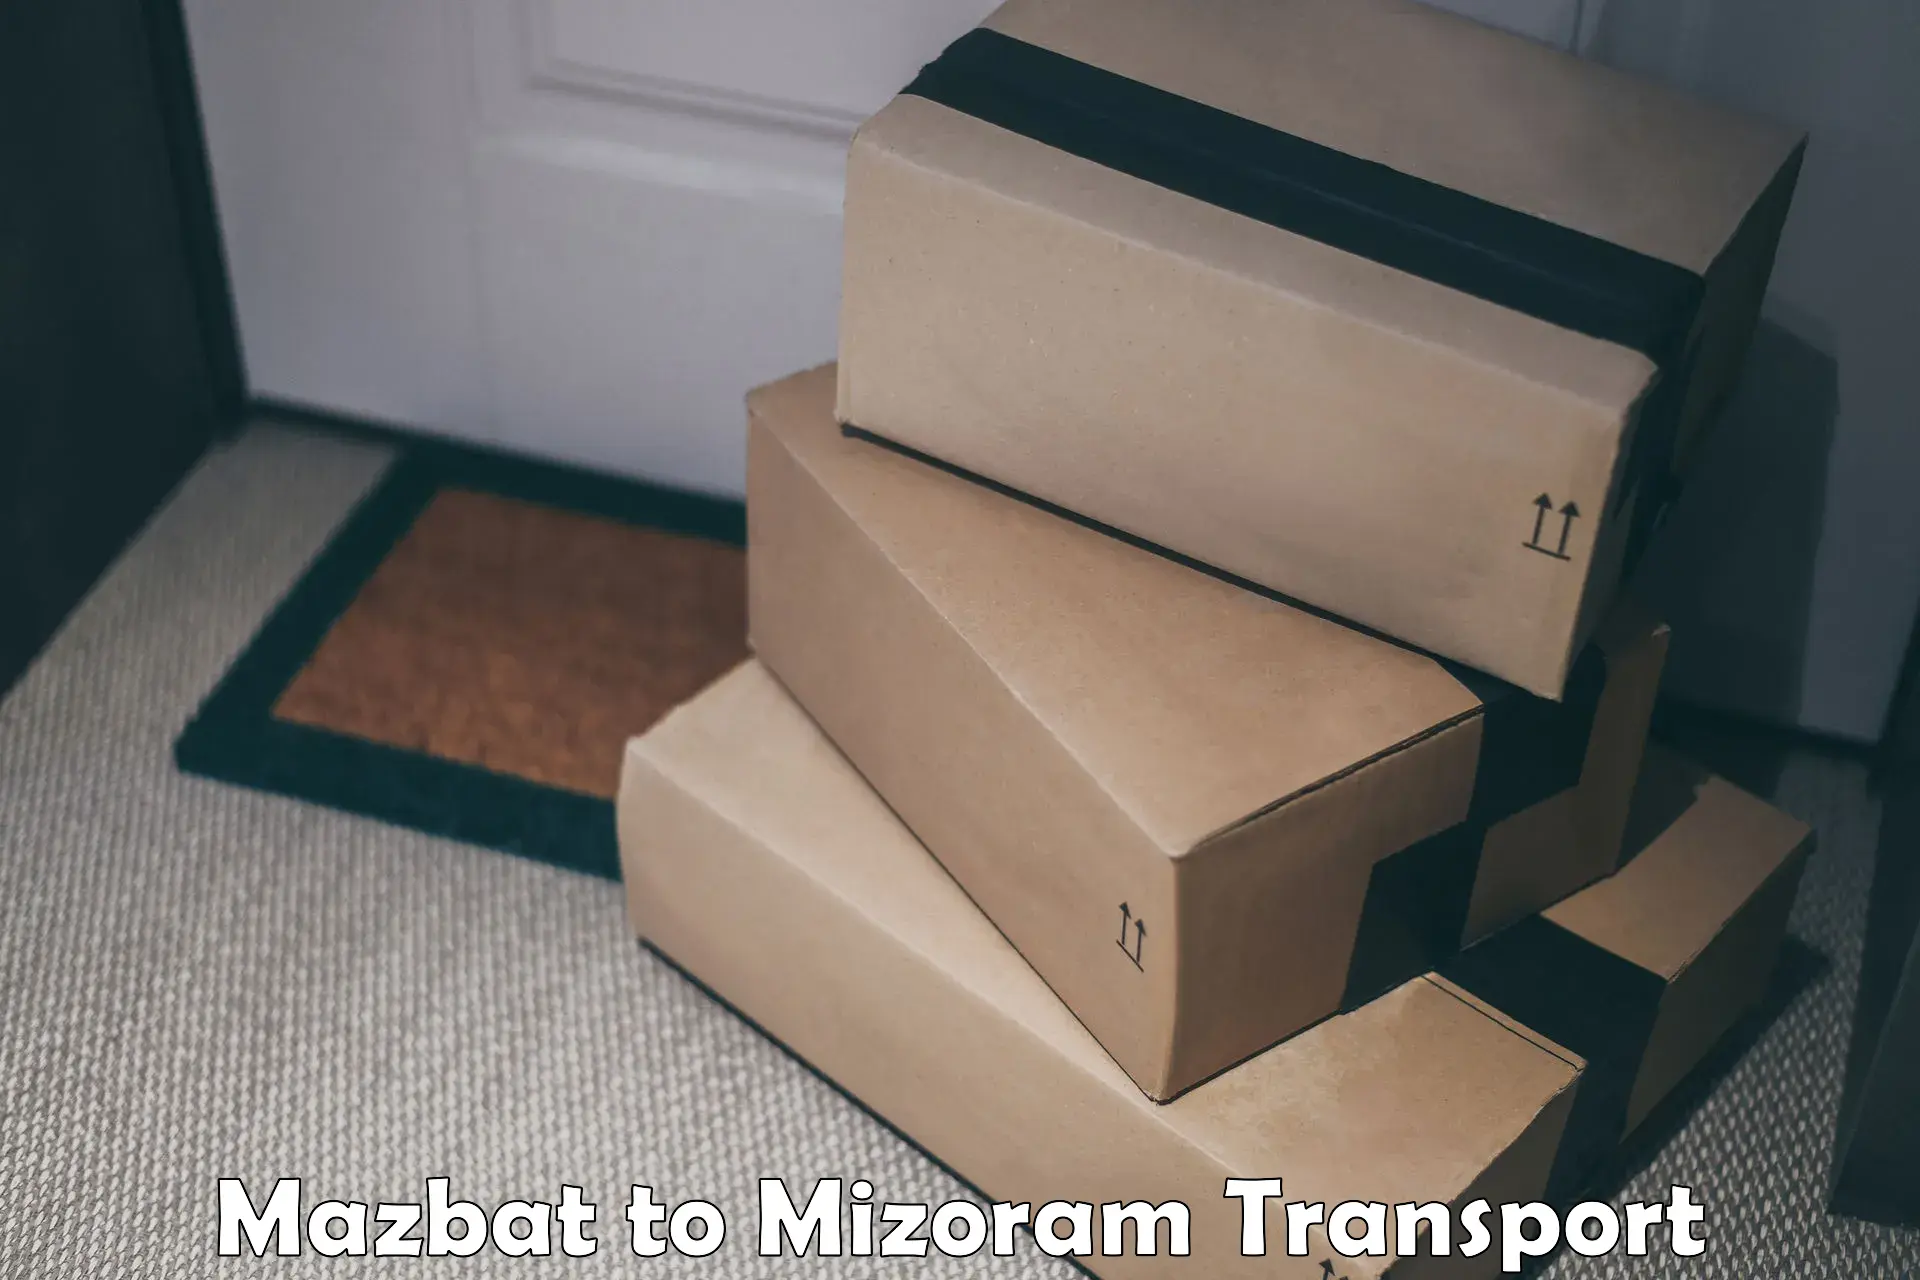 Container transport service Mazbat to Mizoram